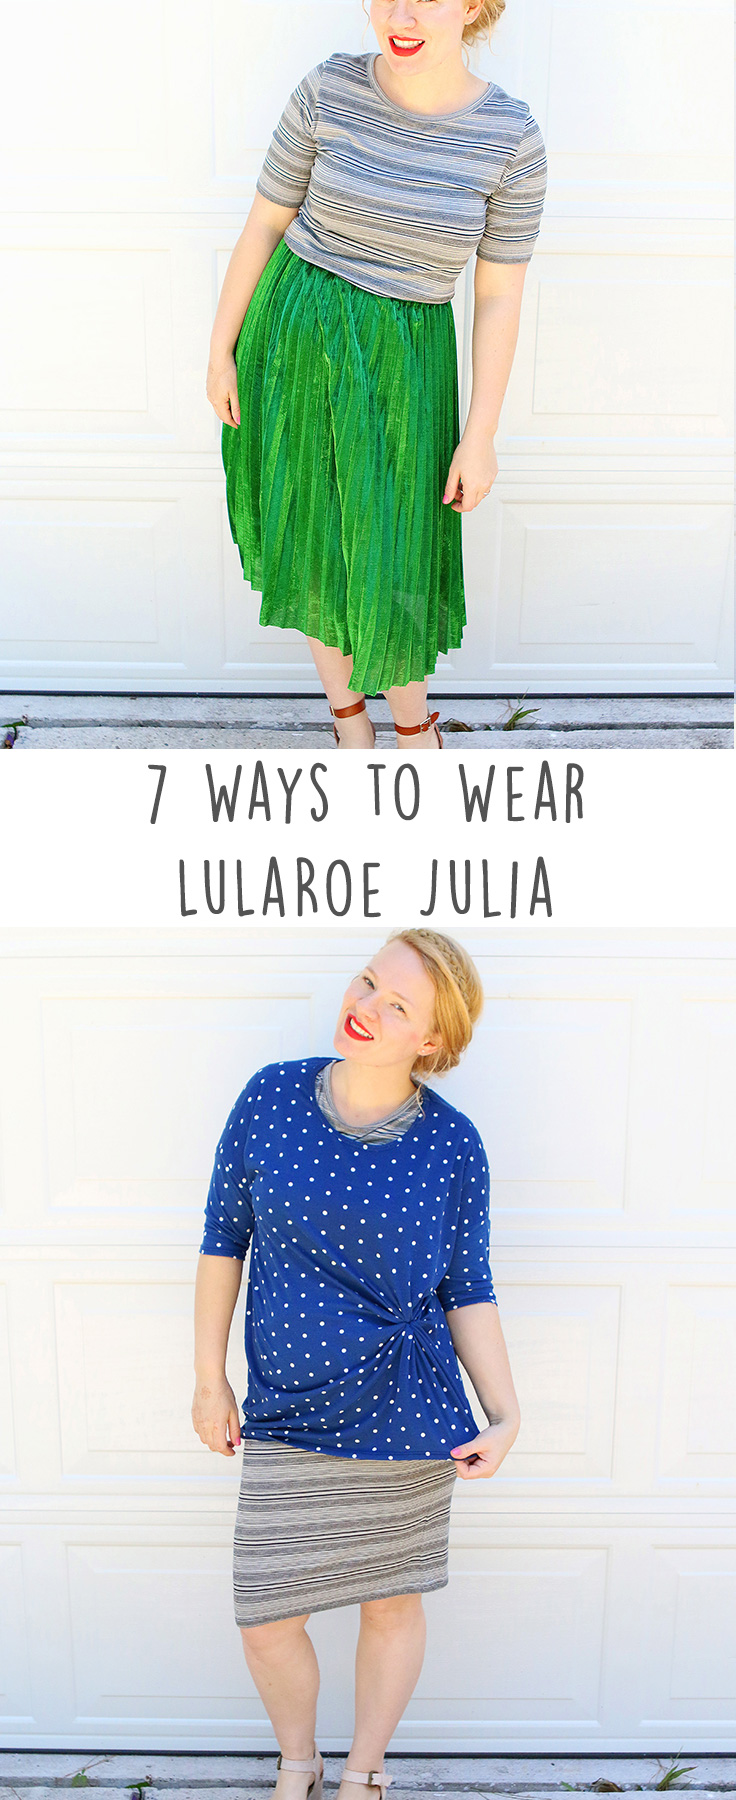 LuLaRoe Julia Dress Styled 7 Ways | Houston Mom Blogger